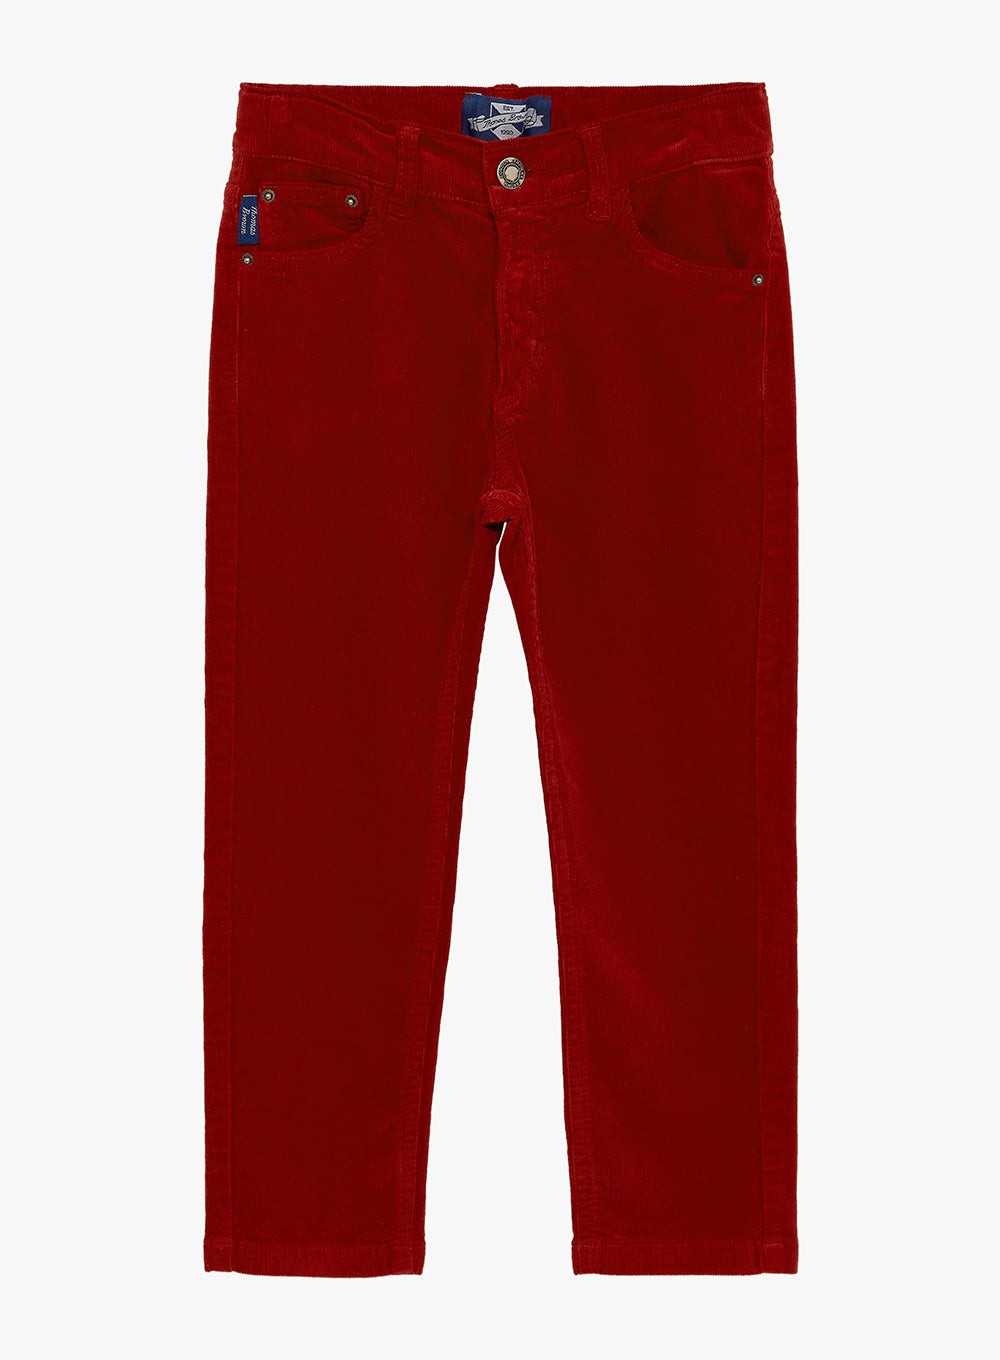 Boys Slim-Cut Corduroy Jake Jeans in Deep Red